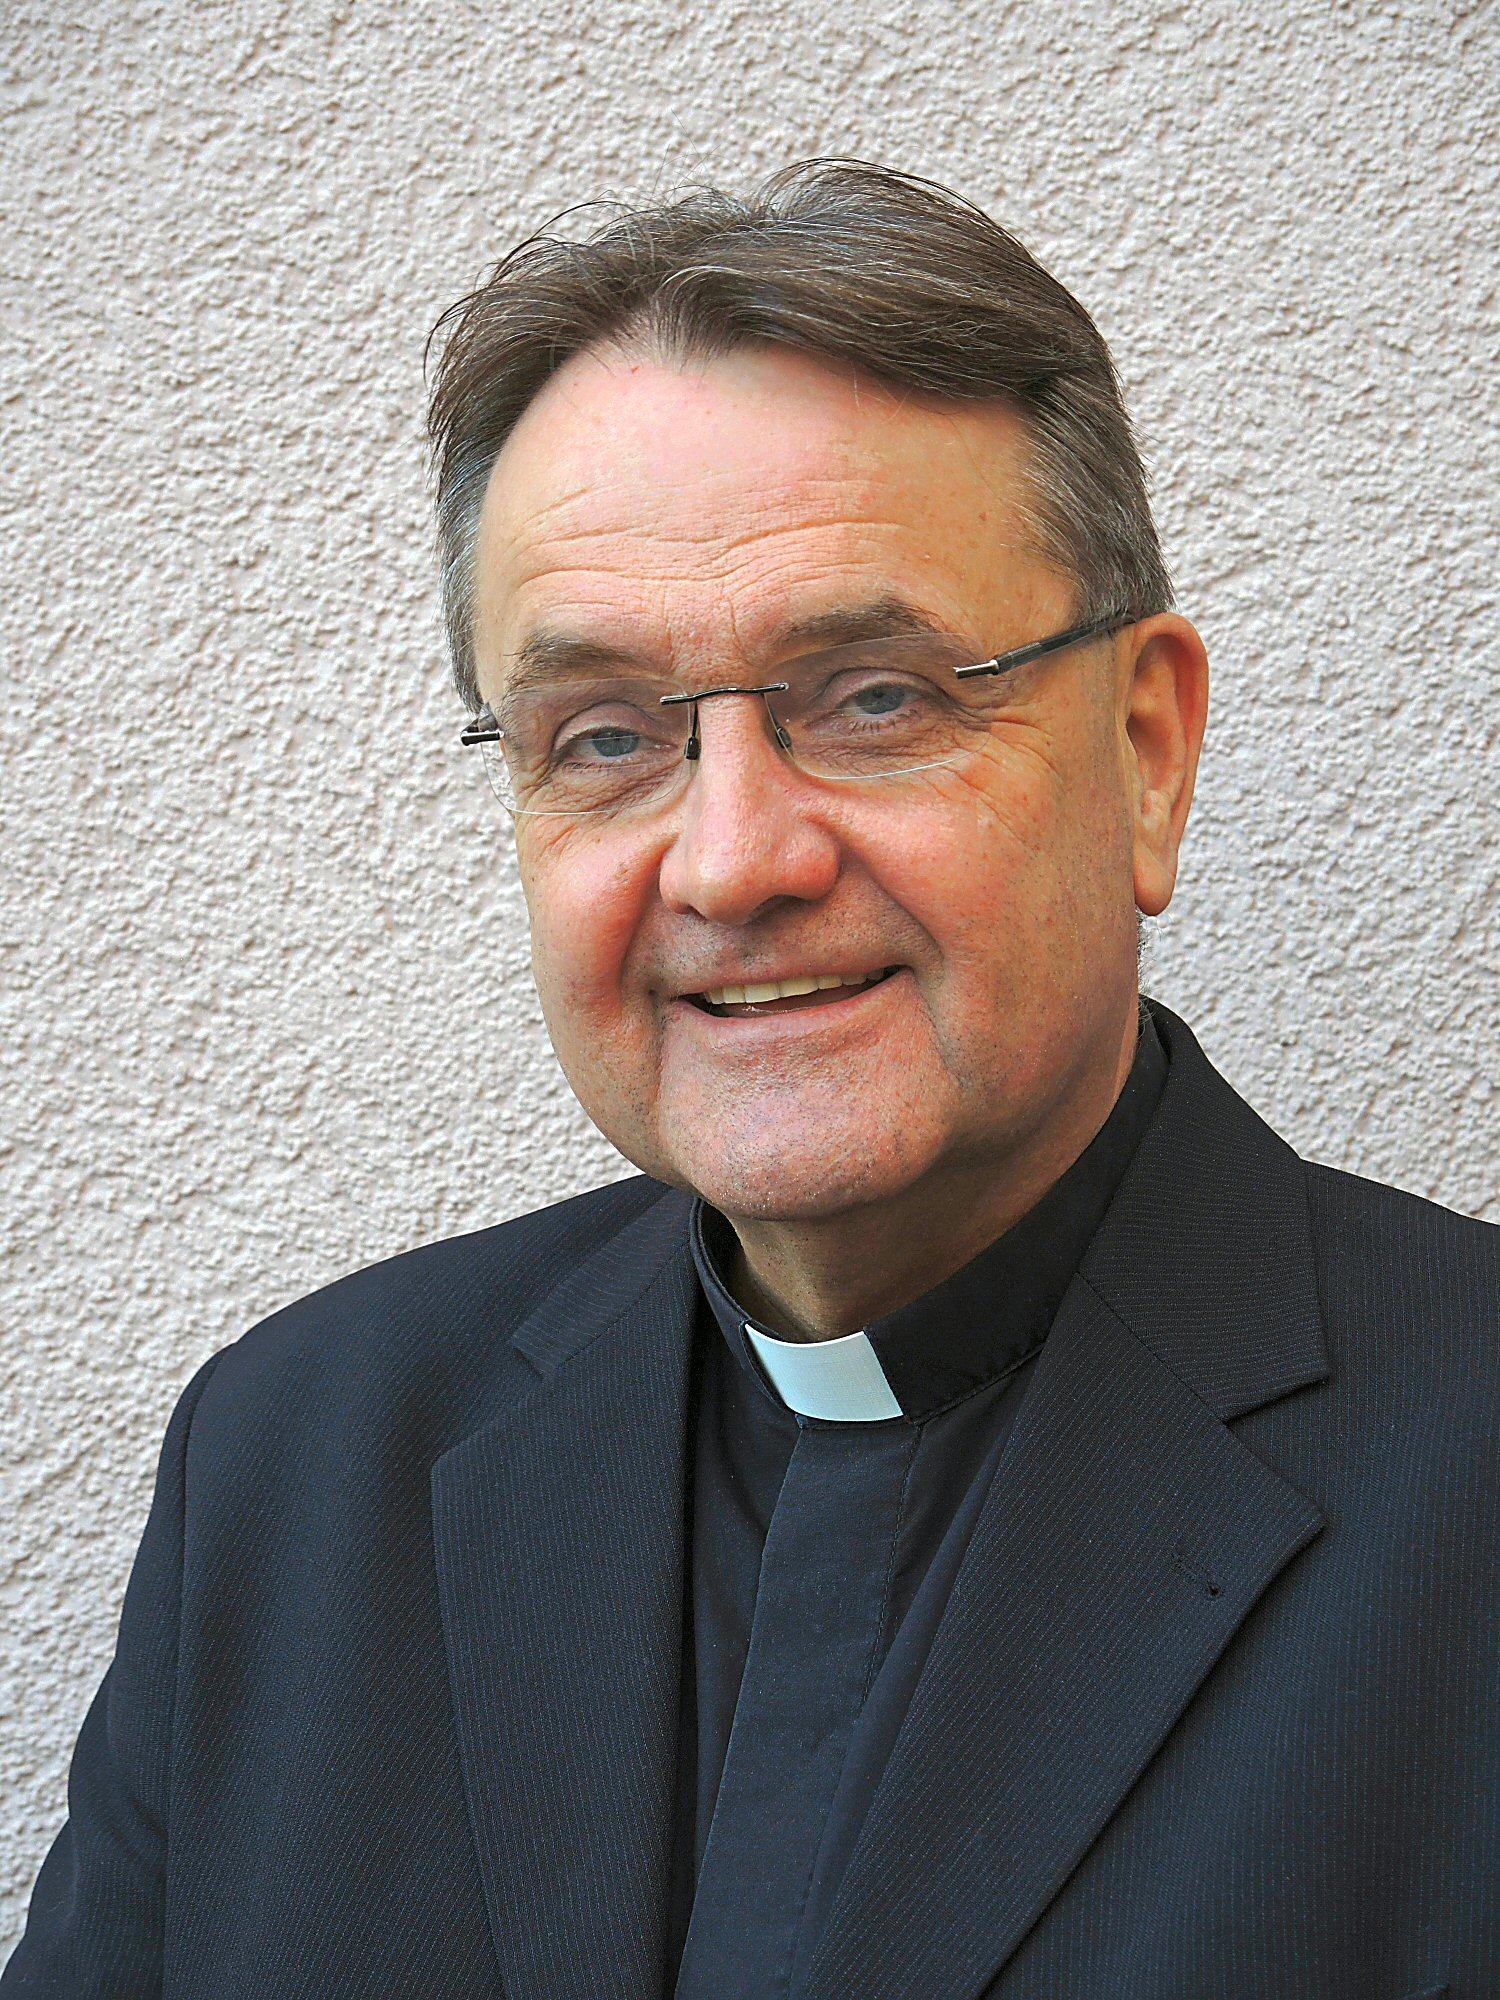 Domkapitular Prälat Dr. Peter Hilger ist Offizial des Bistums Mainz (c) Bistum Mainz / Nichtweiß